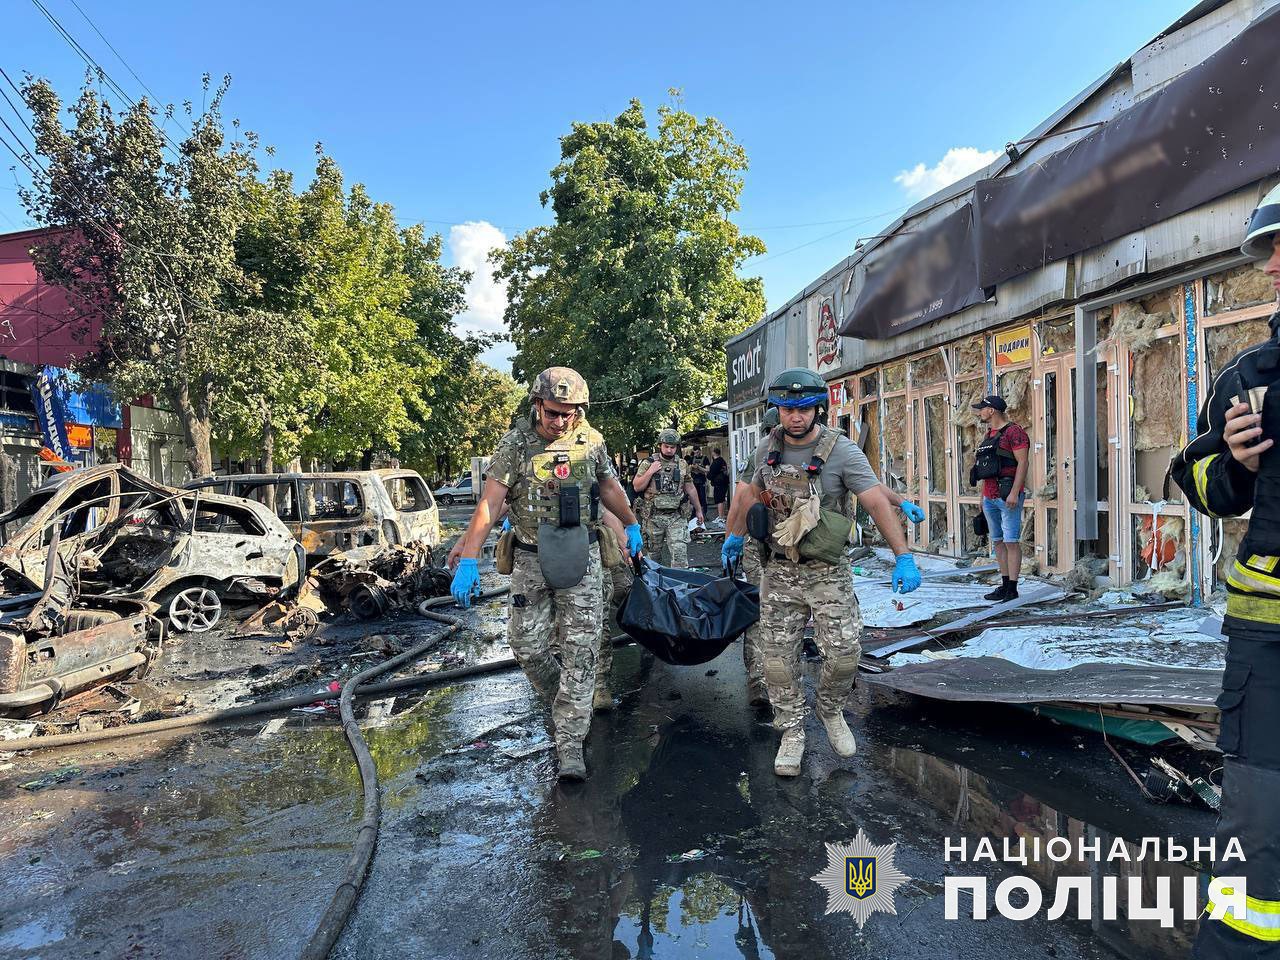 17 погибших и 32 раненых: в Константиновке завершили поисково-спасательную операцию 7